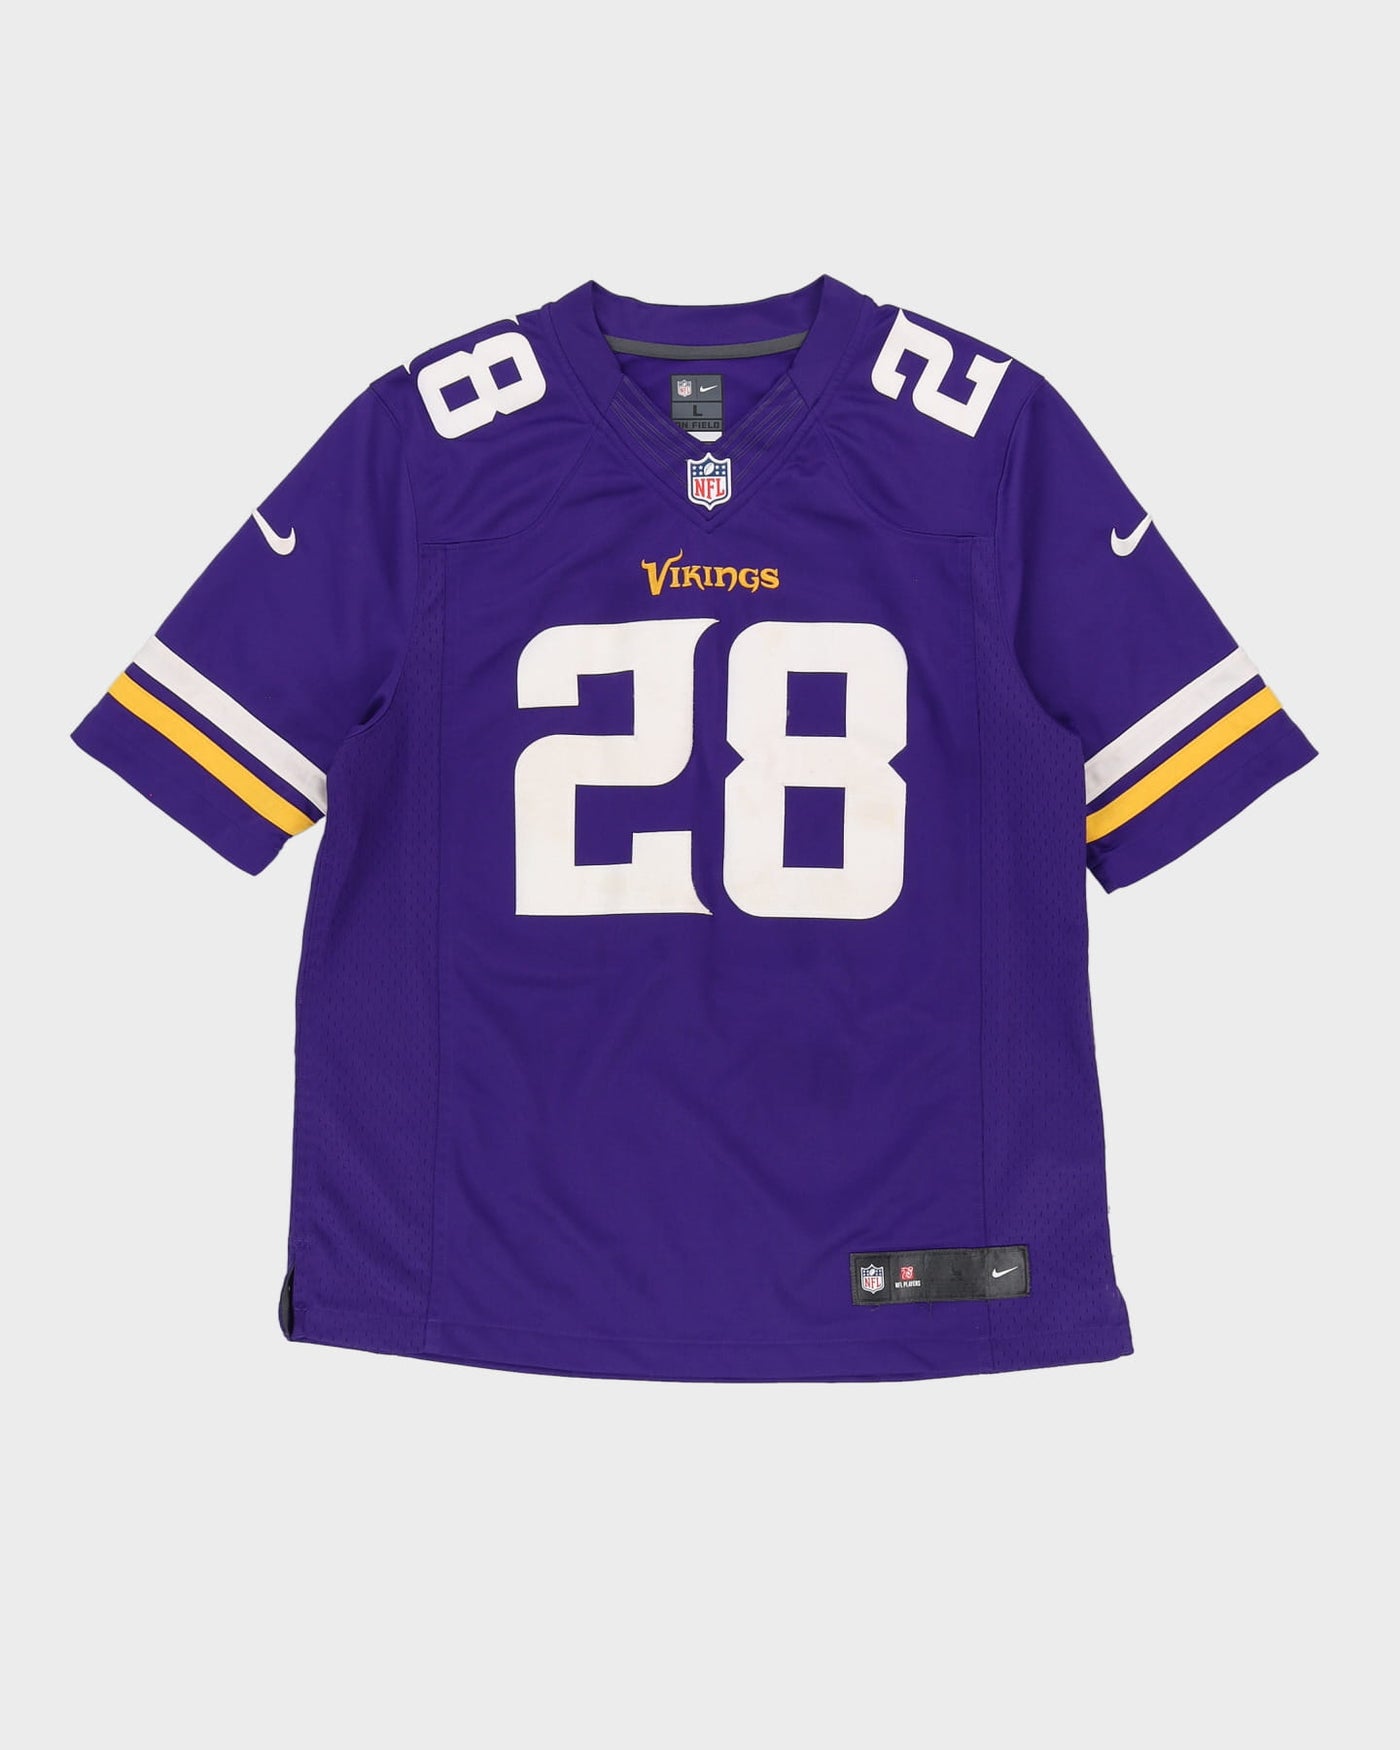 Adrian Peterson #28 Minnesota Vikings Stitched NFL Jersey - L